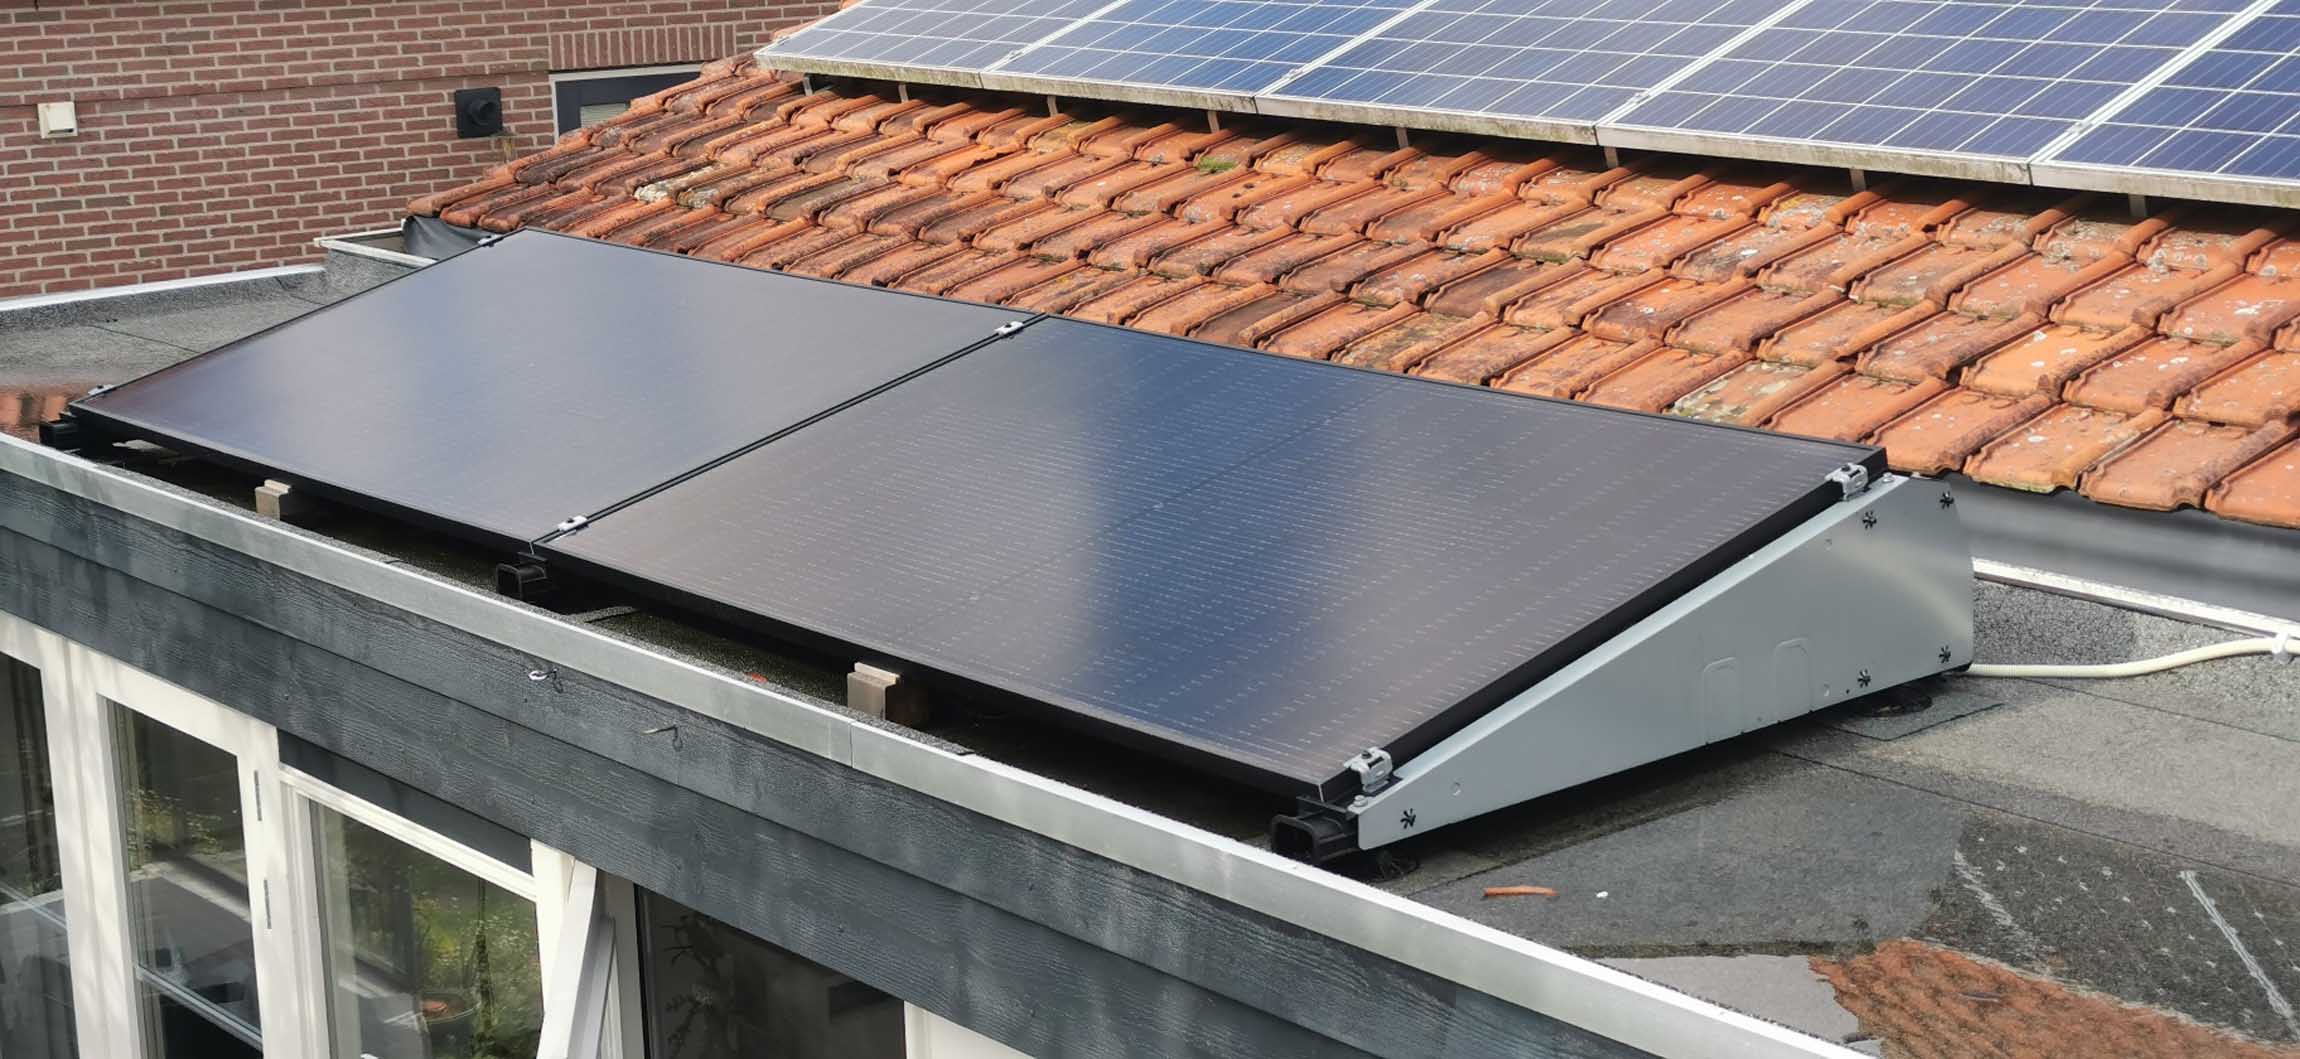 zonnepanelen kleine daken Newpower